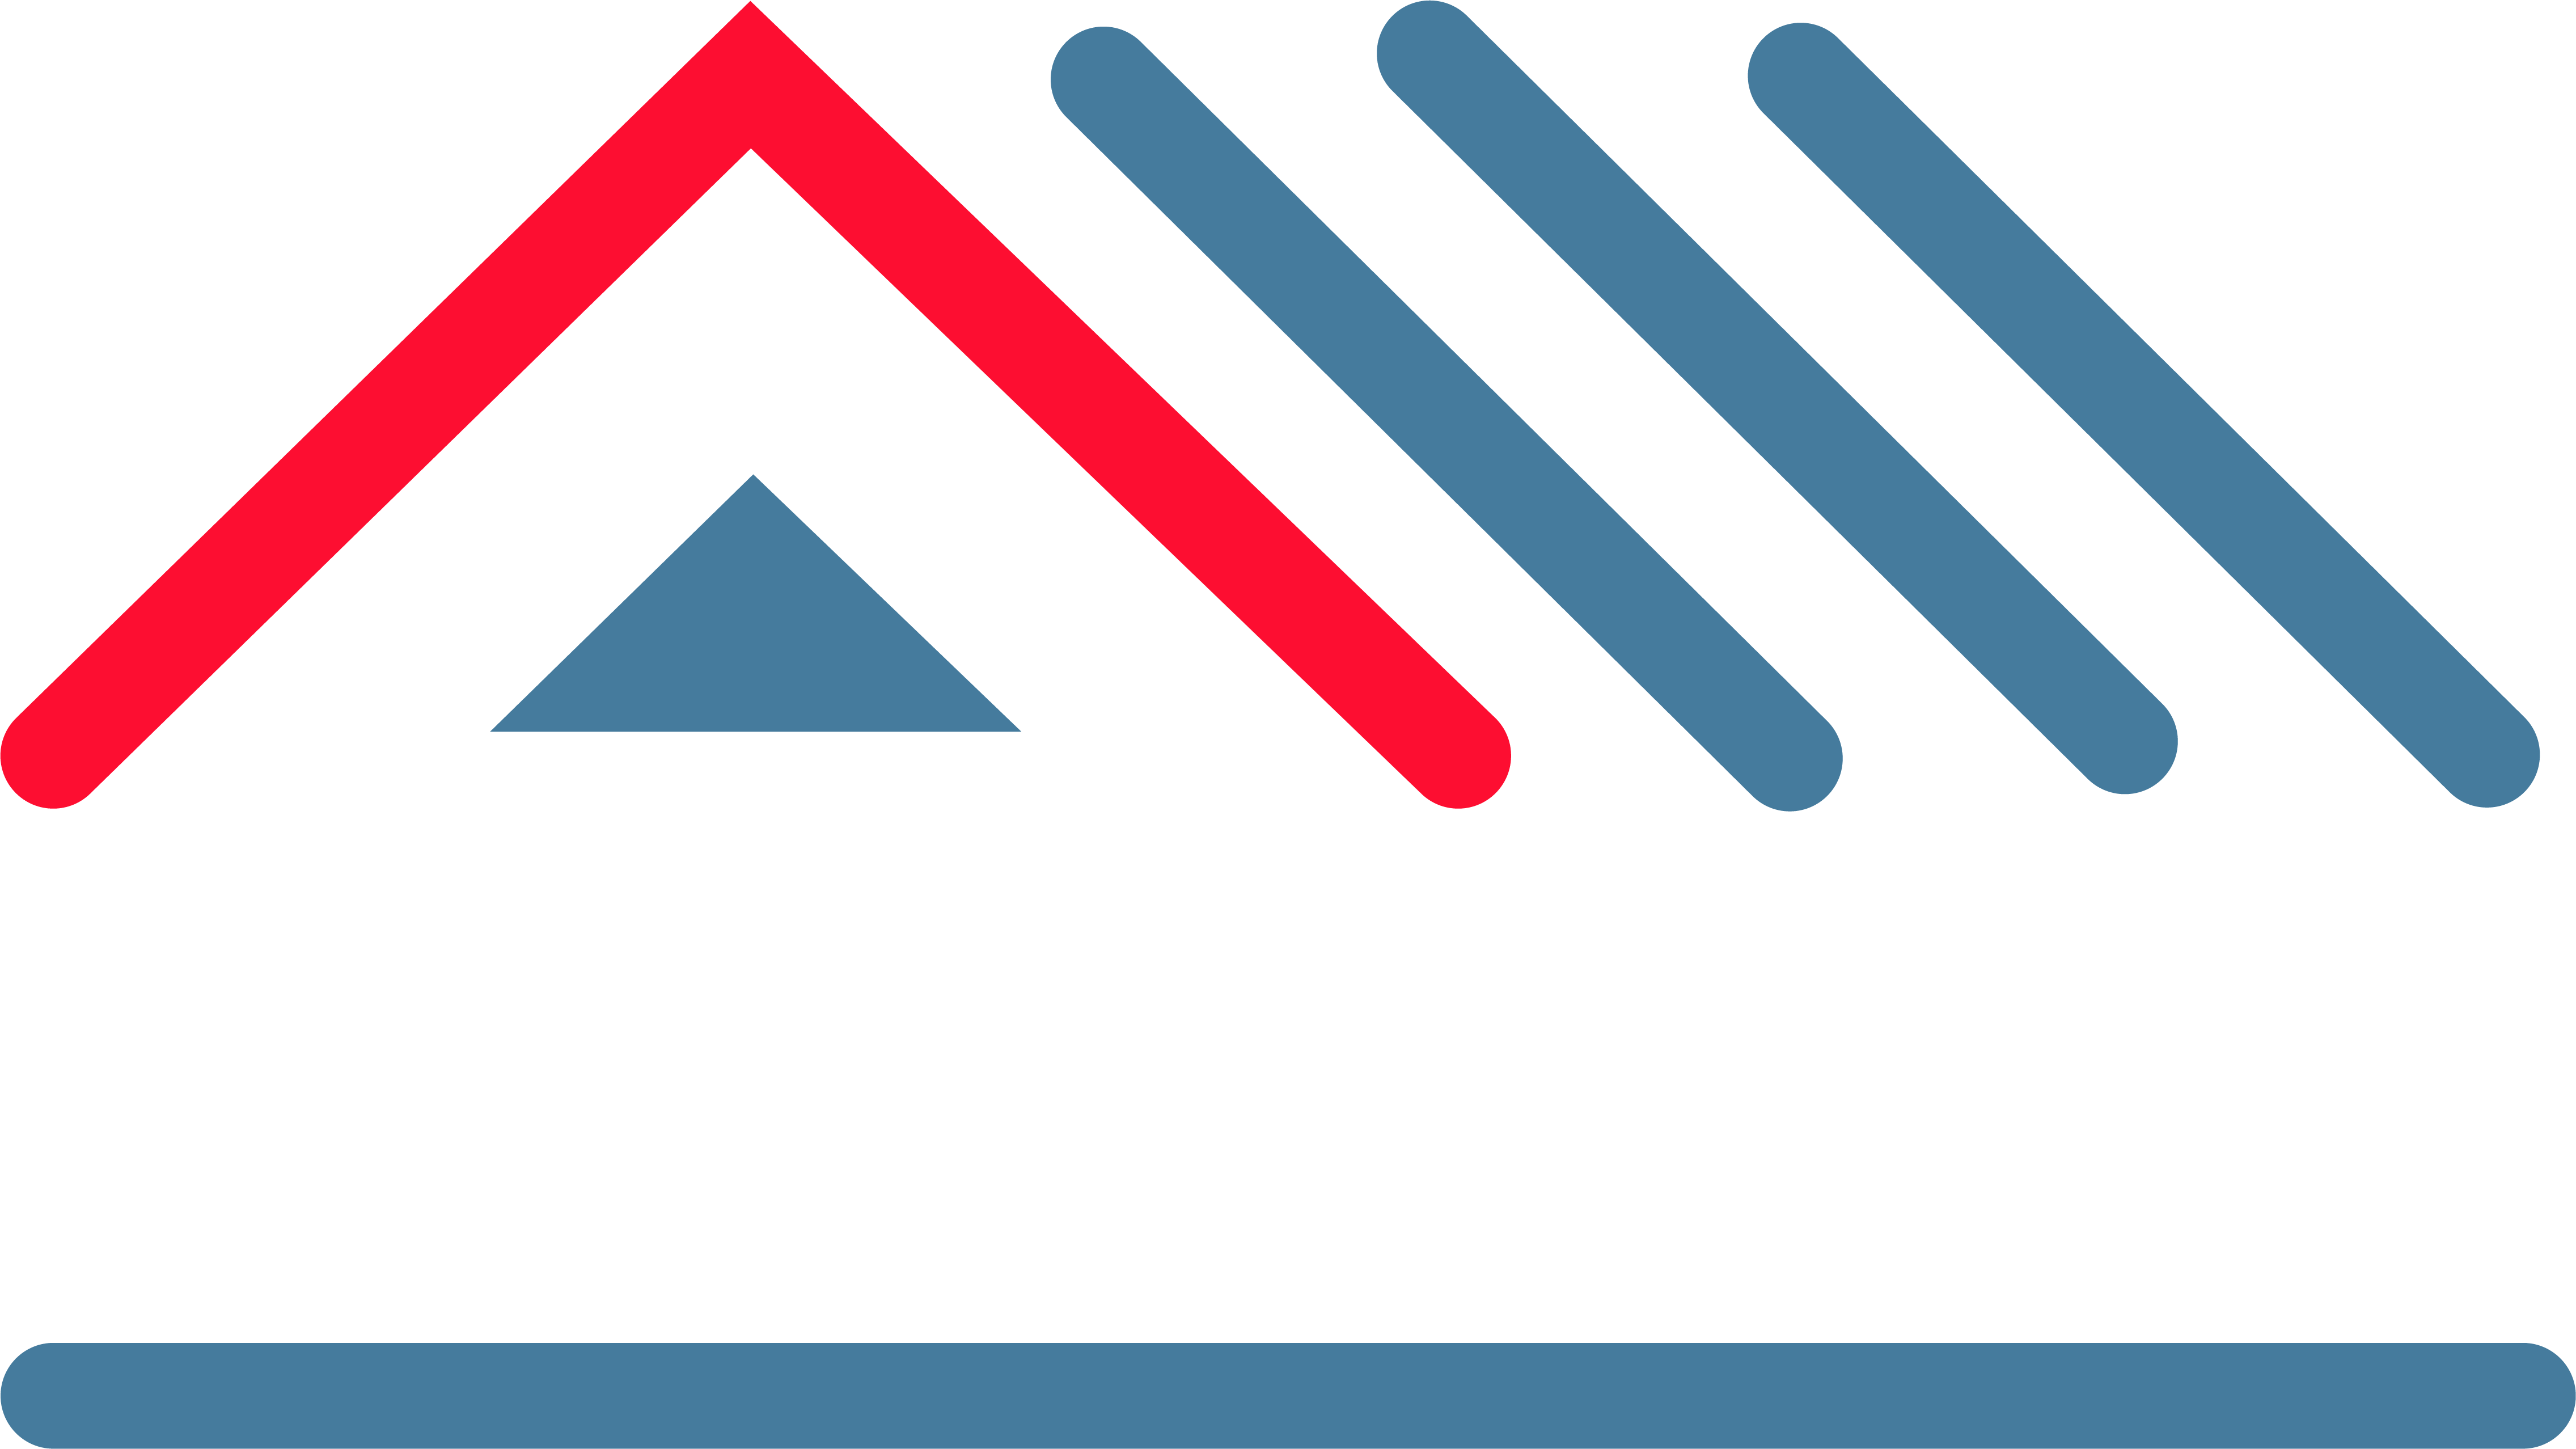 Victoria Prime Logo - Vacation Rentals in Victoria BC